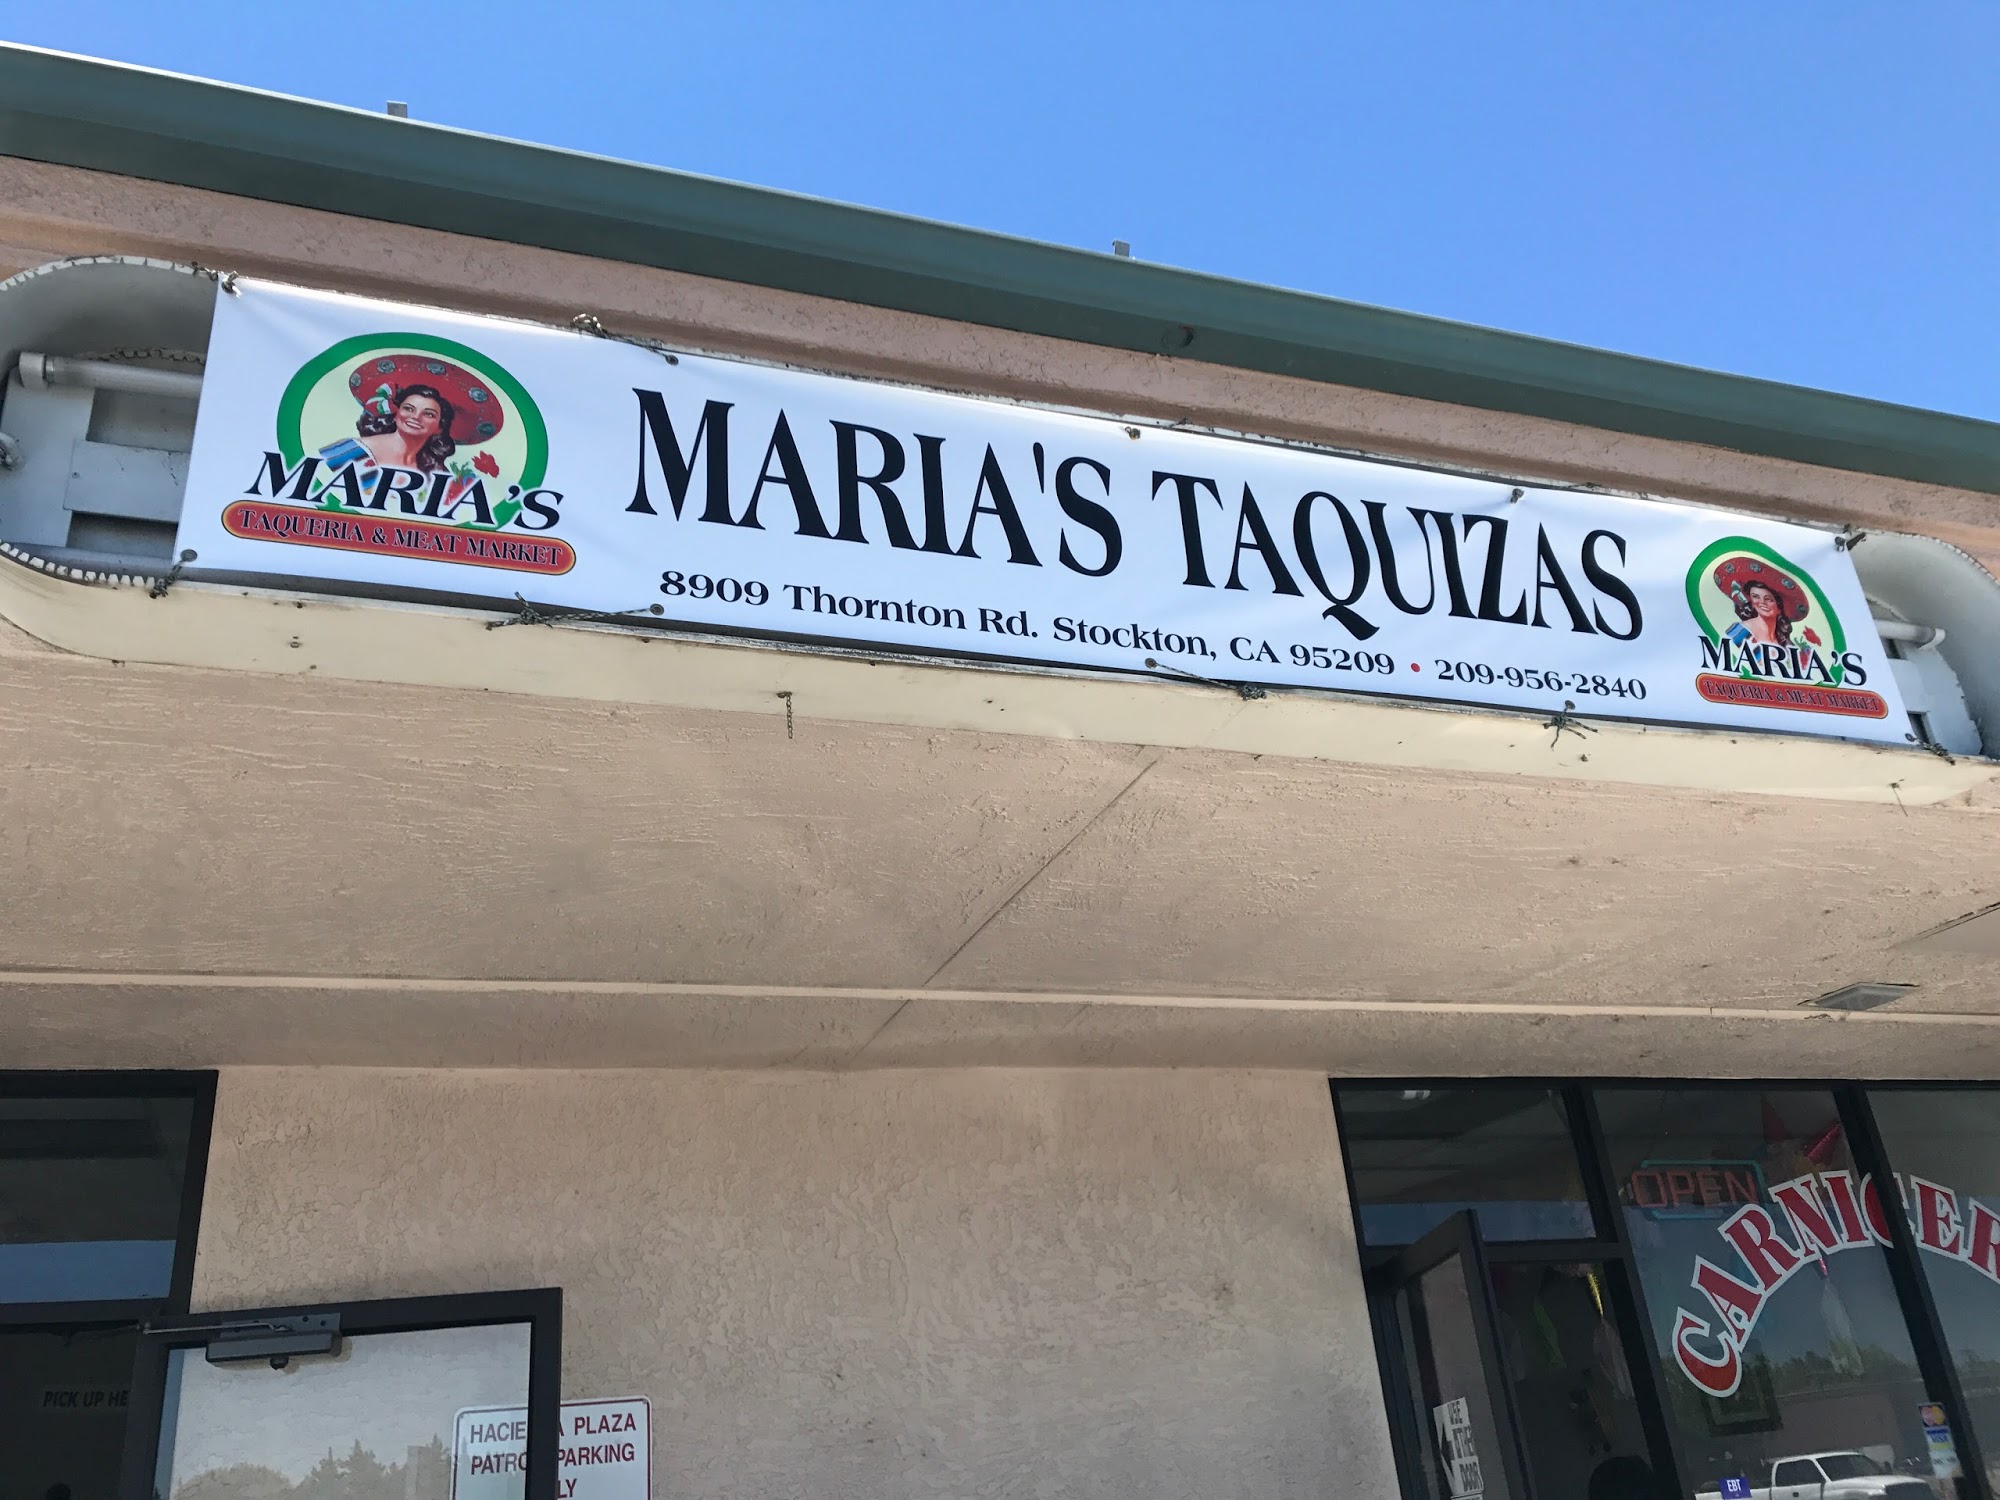 Maria's Taqueria & Meat Market